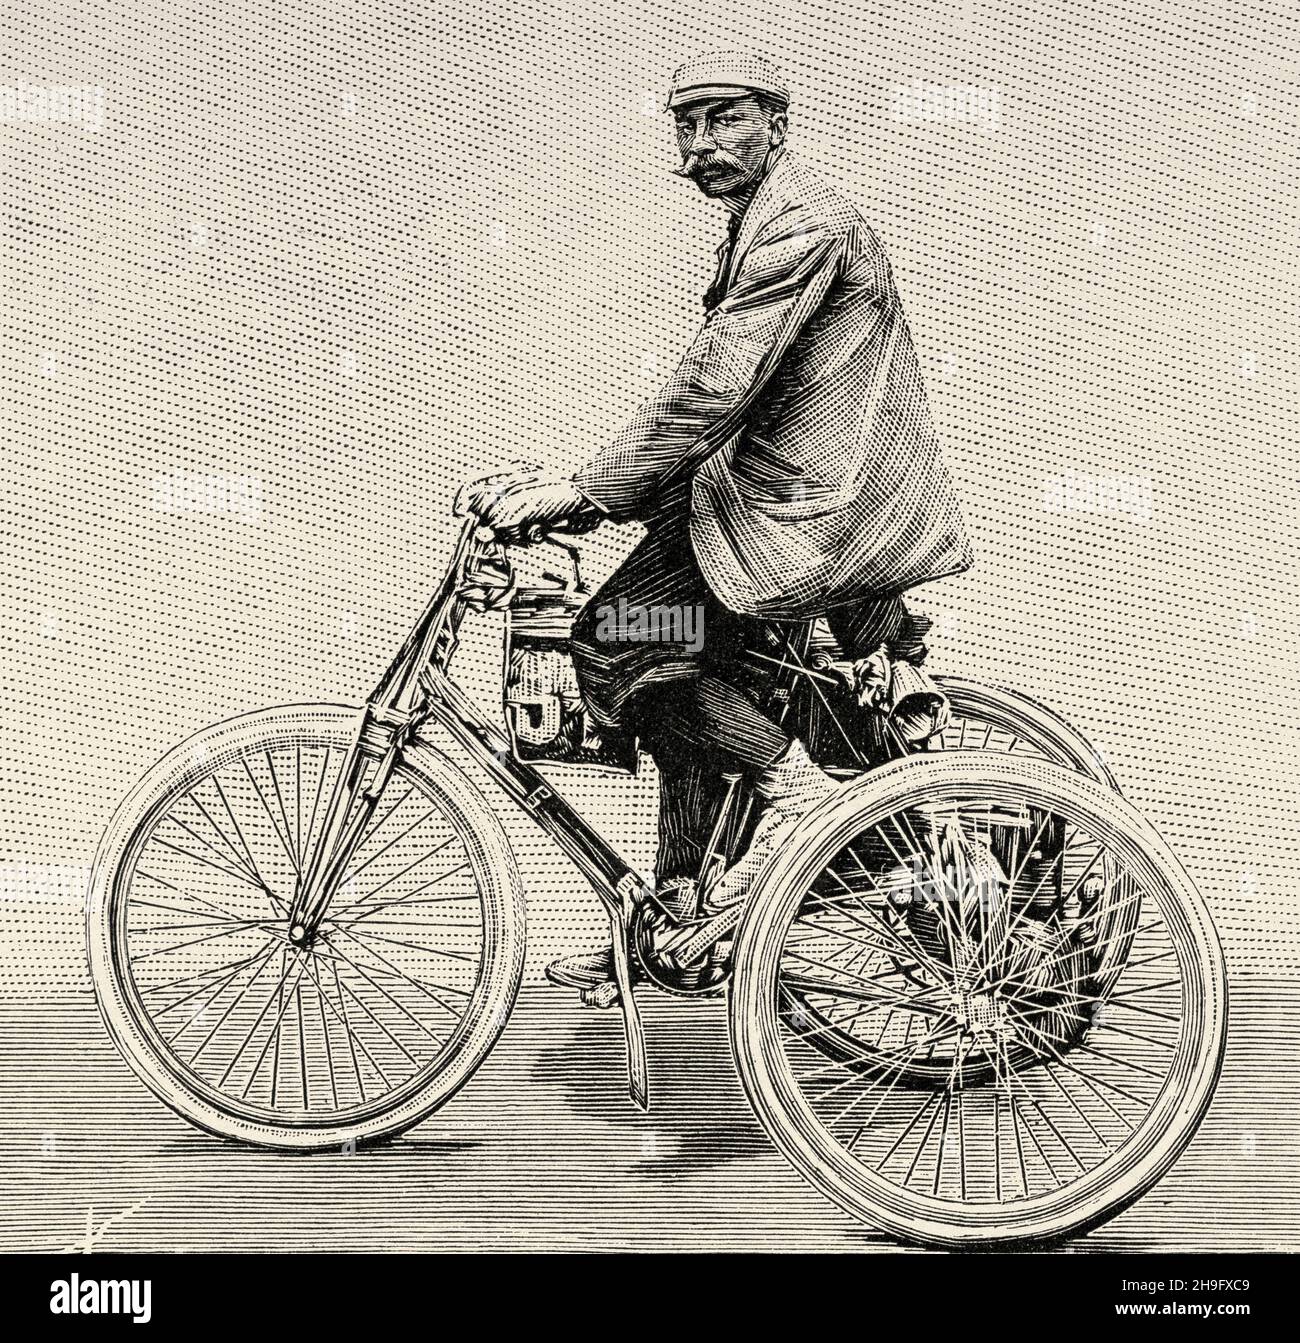 Das Dreirad hat einen Benzinmotor. Dion und Bouton Dreirad. Alte, gravierte  Illustration aus dem 19. Jahrhundert von La Nature 1897 Stockfotografie -  Alamy